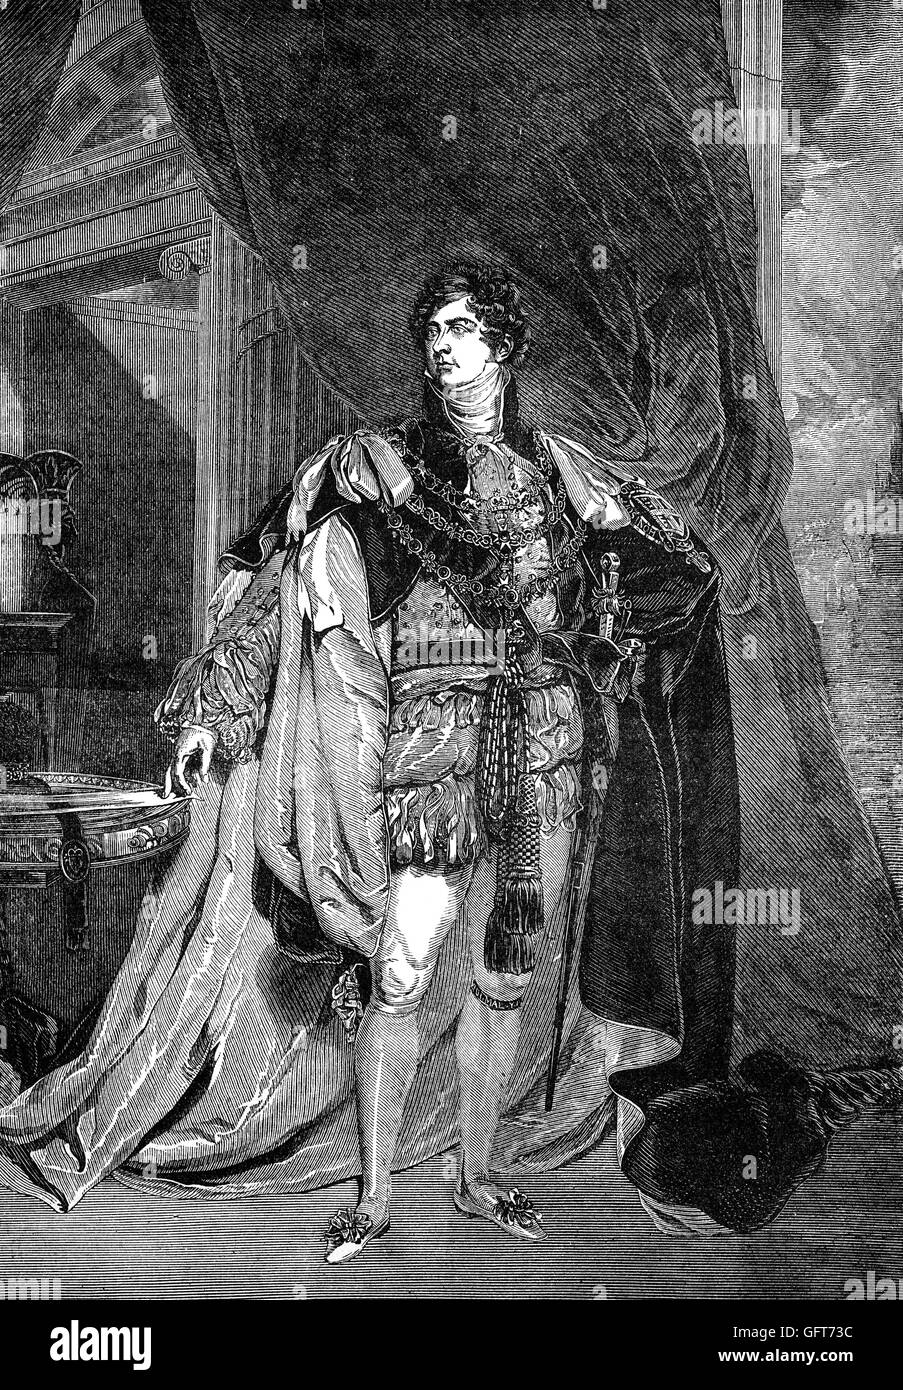 George IV (George Augustus Frederick (1762 - 1830) era el Rey del Reino Unido de Gran Bretaña e Irlanda y de Hannover tras la muerte de su padre, George III, el 29 de enero de 1820, hasta su propia muerte diez años después. Desde 1811 hasta el momento de su adhesión, se desempeñó como príncipe regente durante su última enfermedad mental del padre. Foto de stock